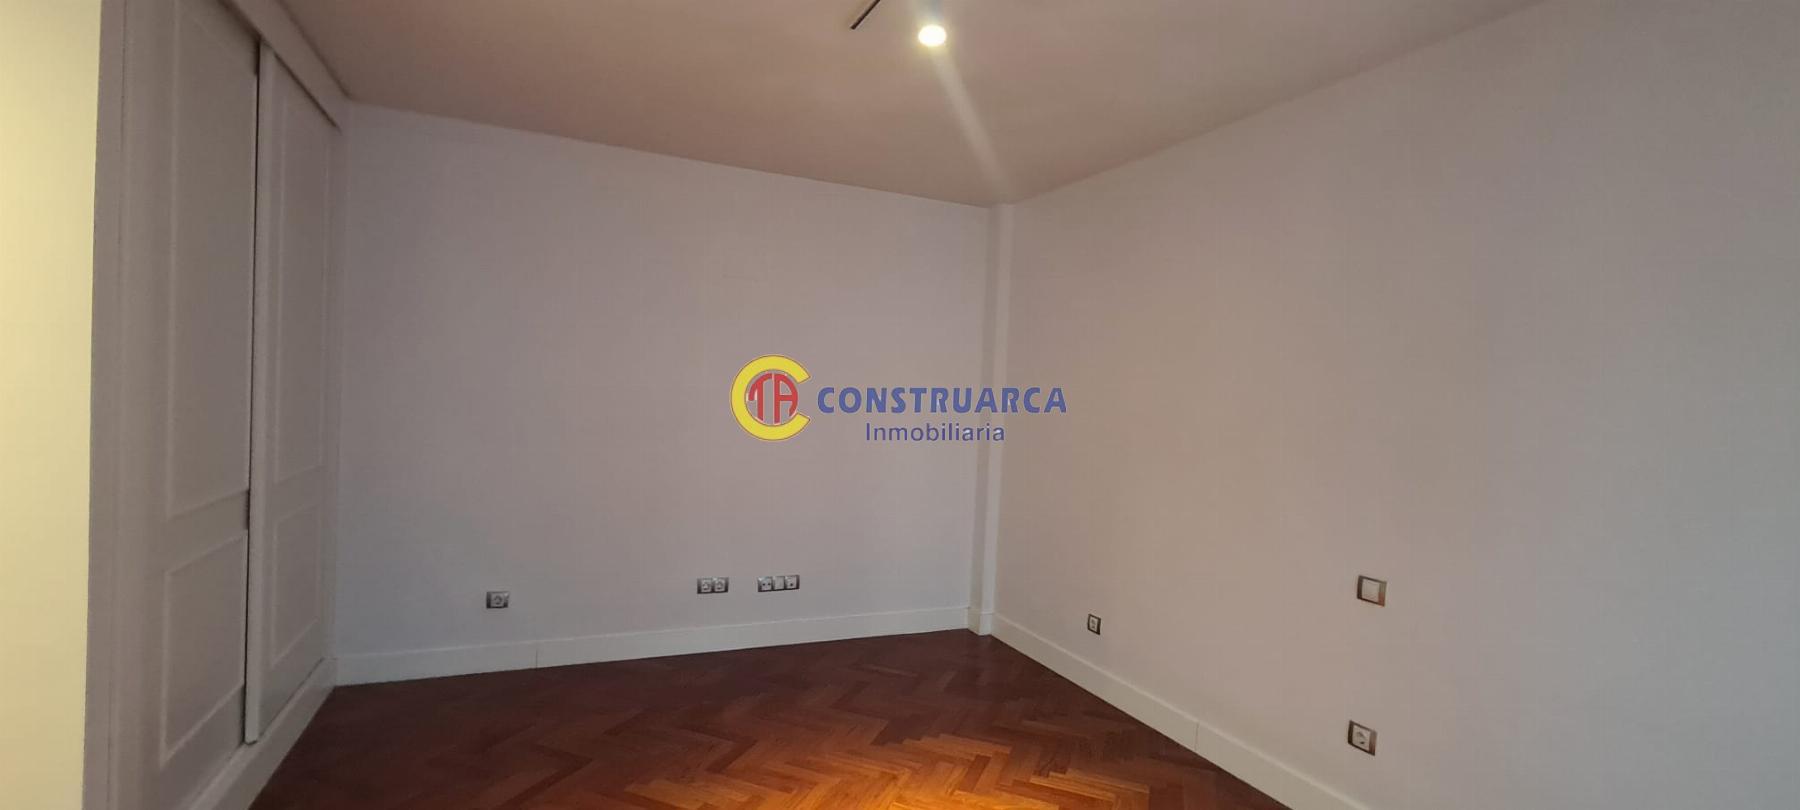 For rent of flat in Talavera de la Reina